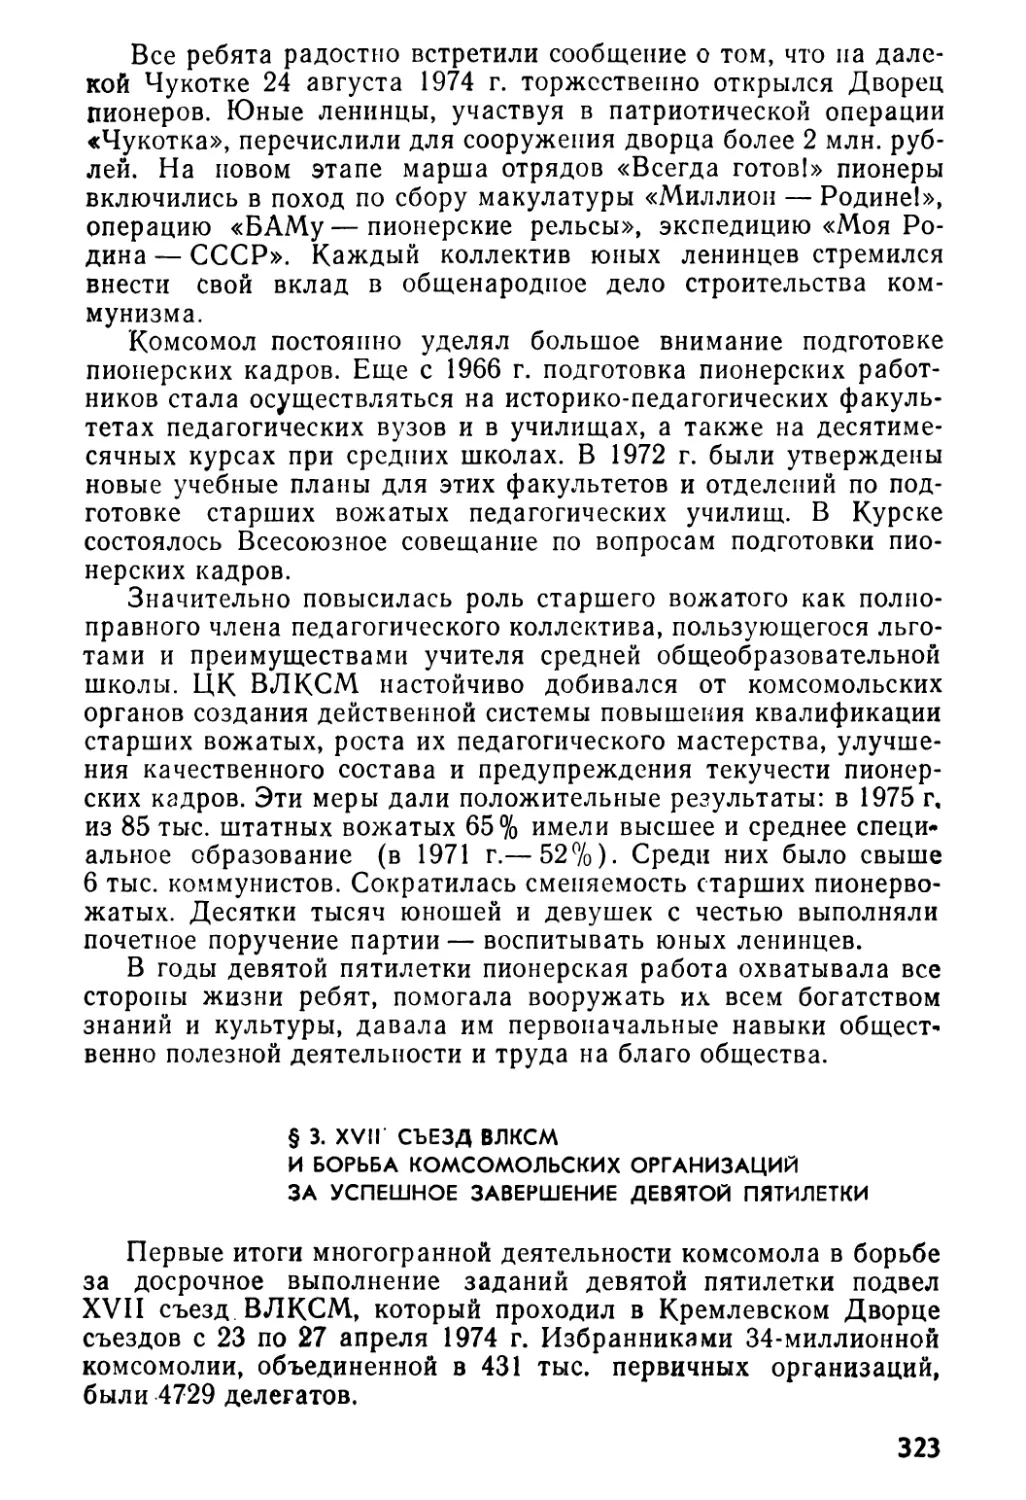 § 3. XVII съезд ВЛКСМ и борьба комсомольских организаций за успешное завершение девятой пятилетки